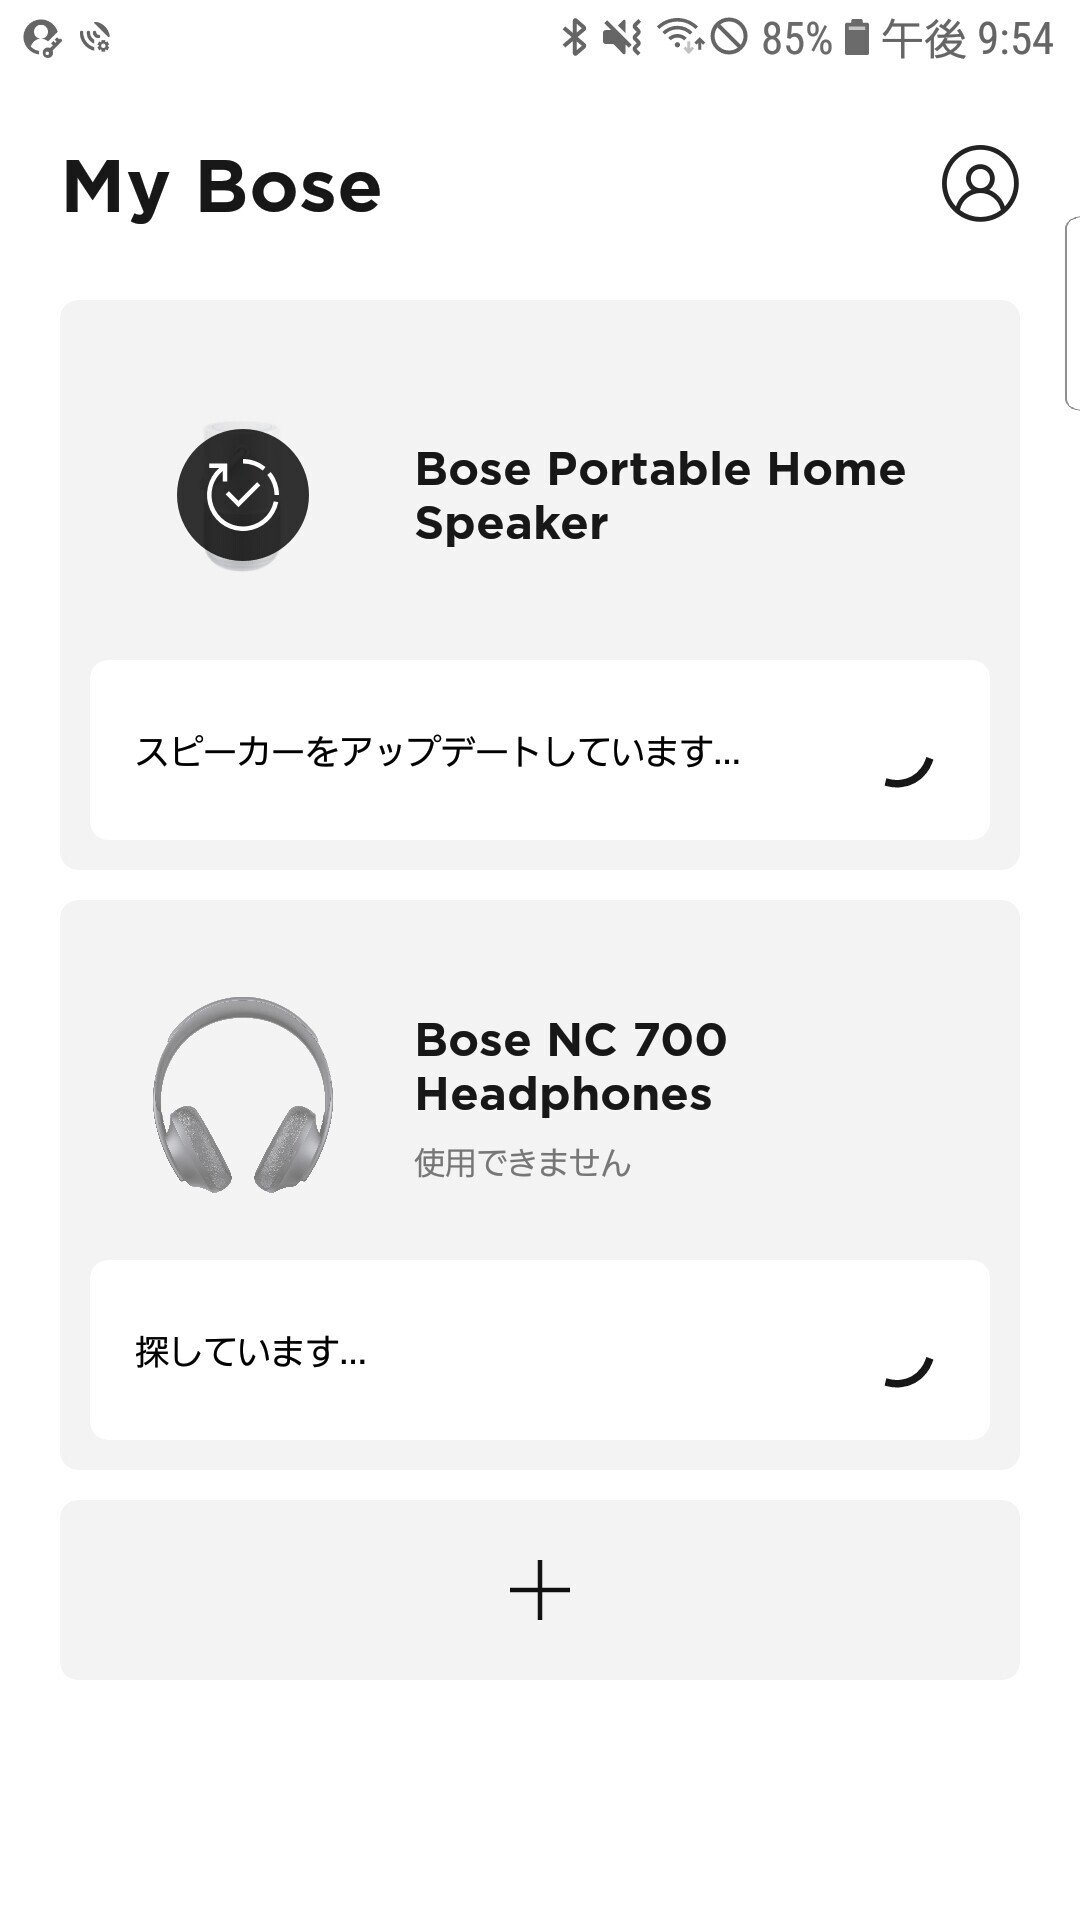 スマートスピーカー初心者が相棒にBOSE Portable Home Speakerを選んで